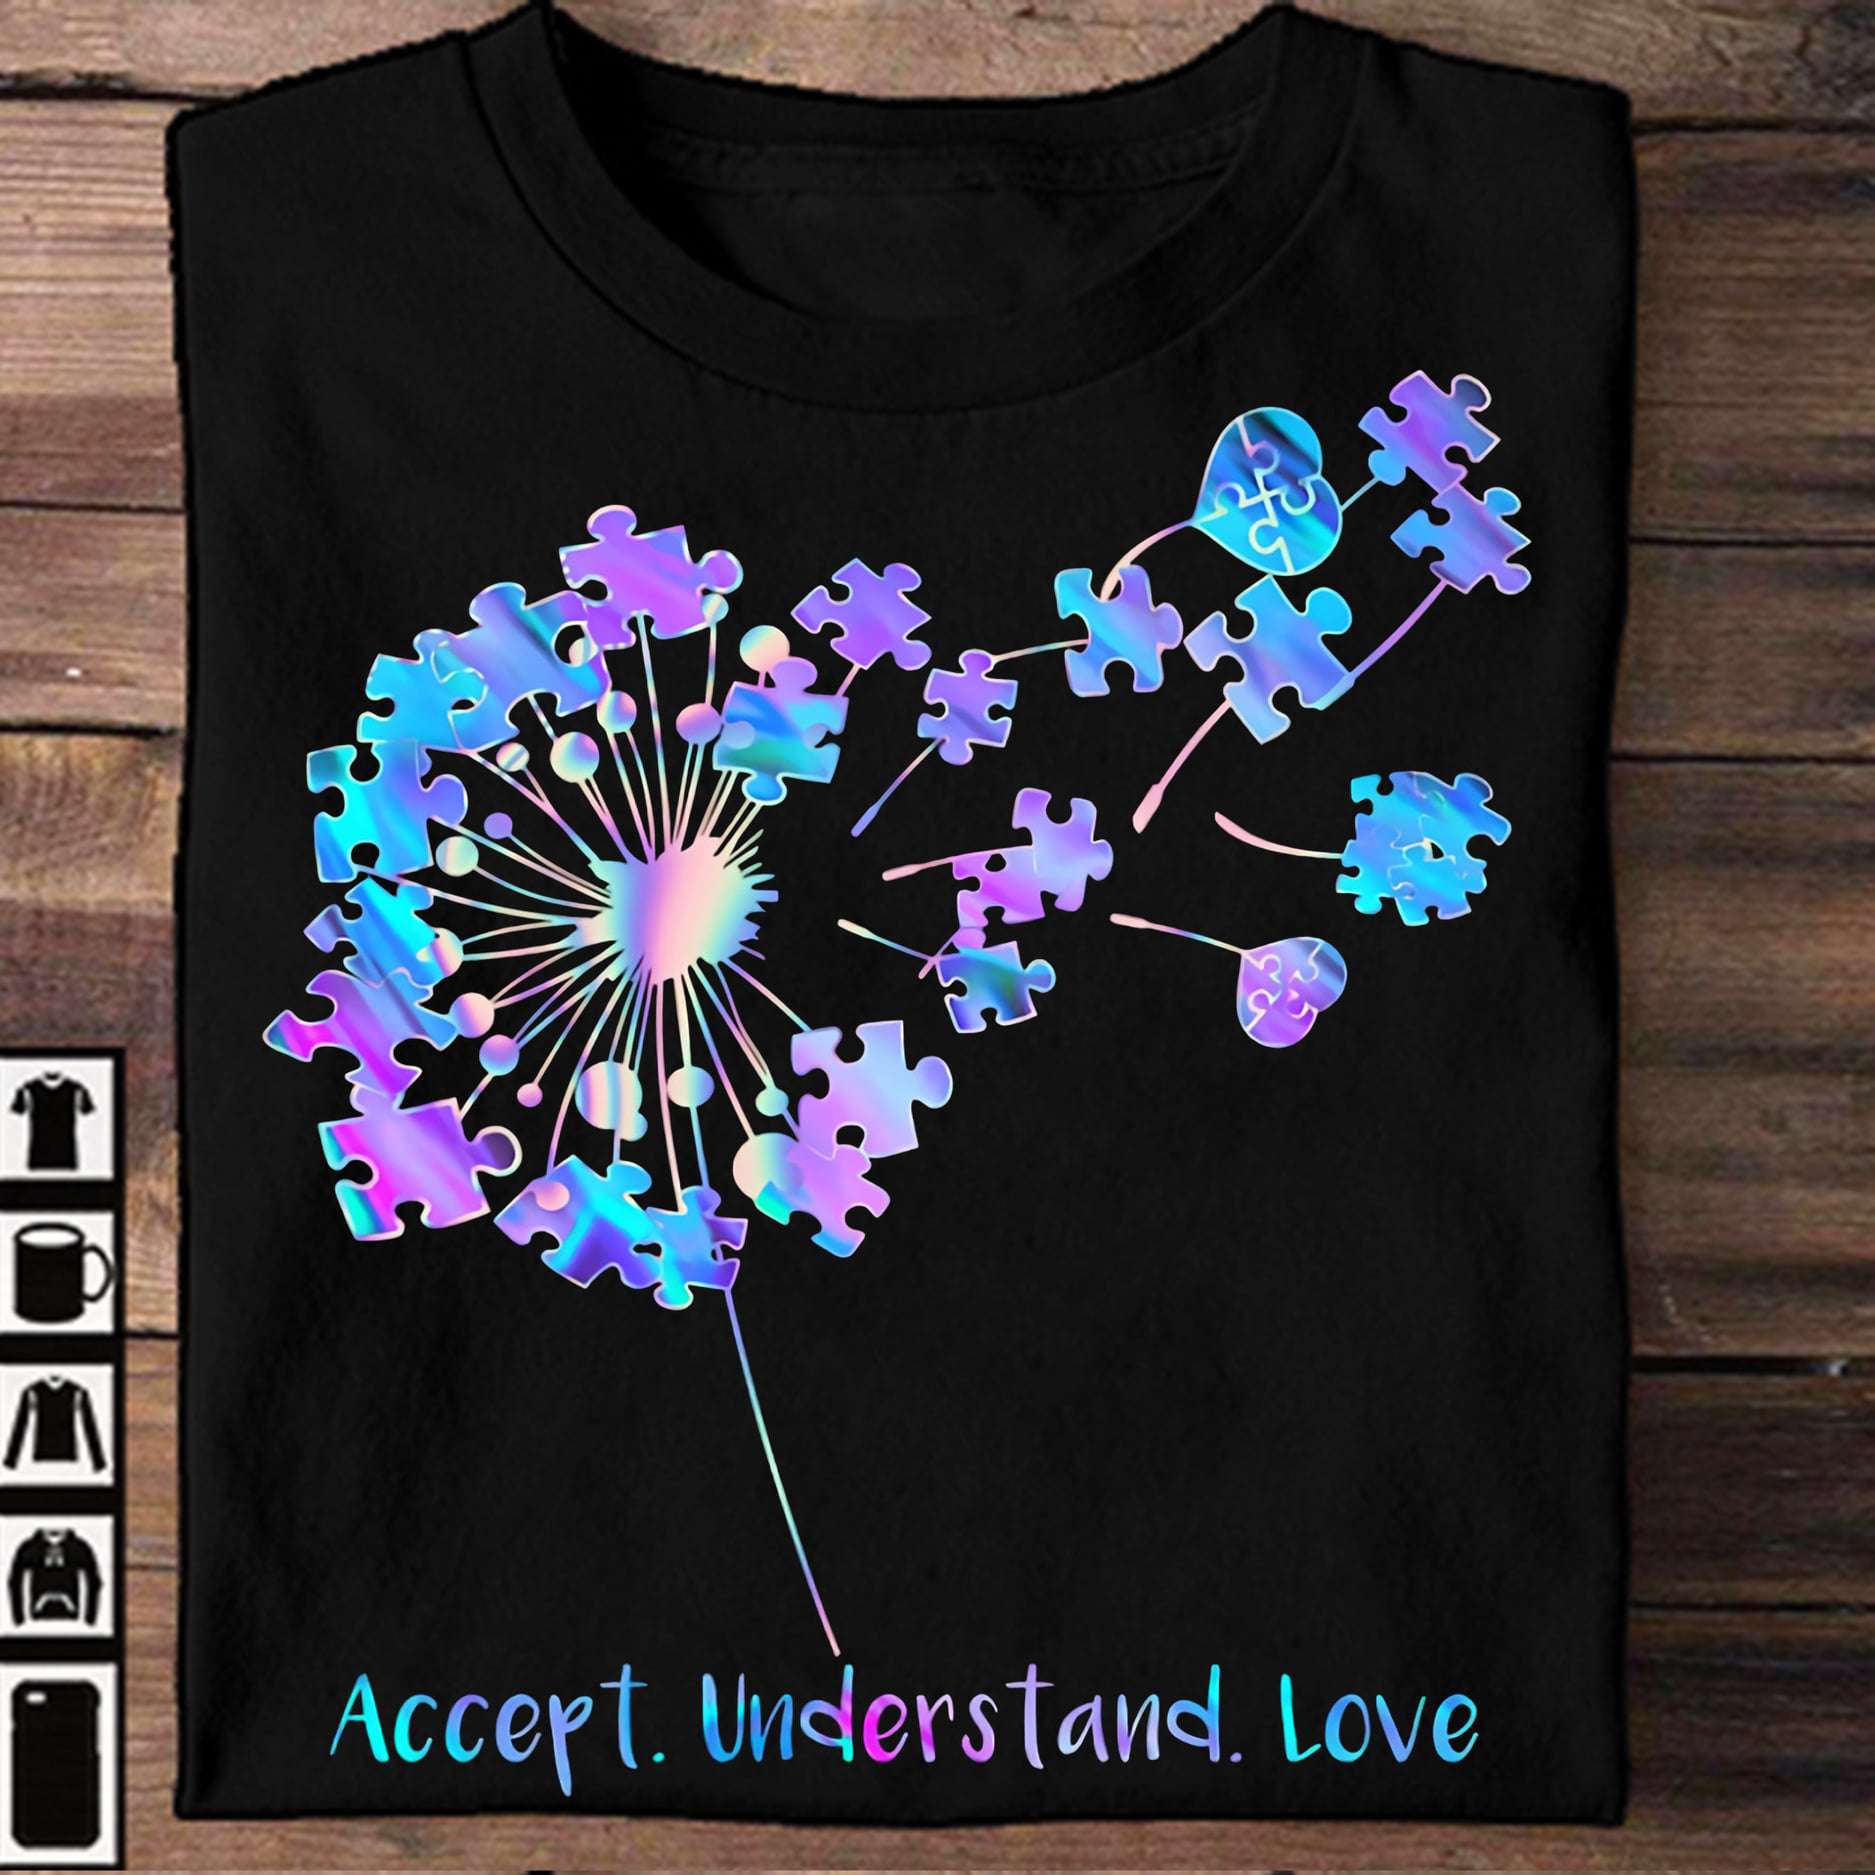 Accept understand love - Autism awareness, autism understanding